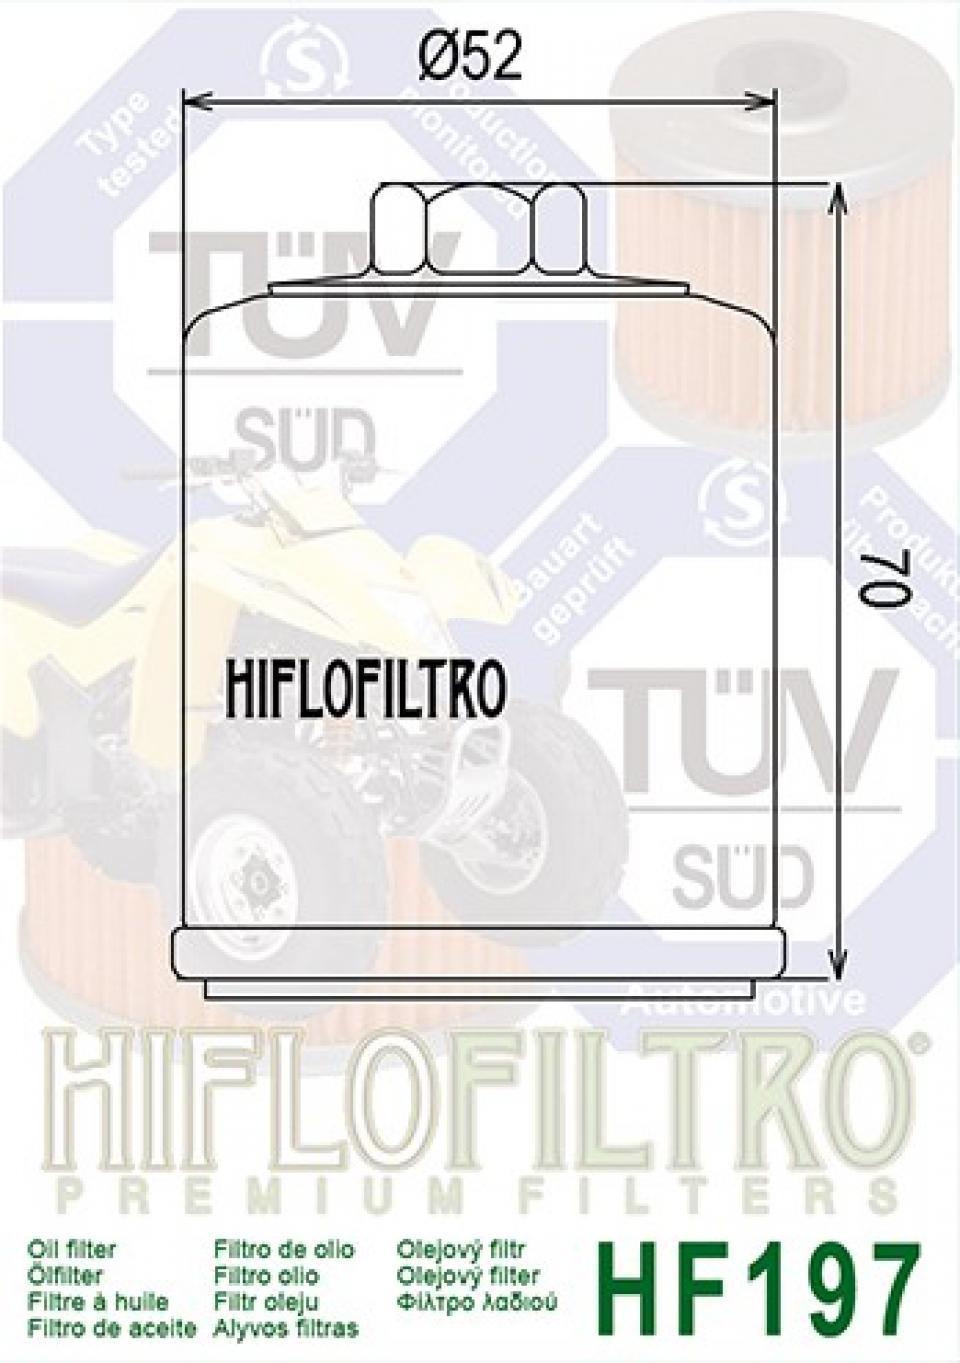 Filtre à huile Hiflofiltro pour Scooter Hyosung 250 Ms3 2006 à 2011 Neuf